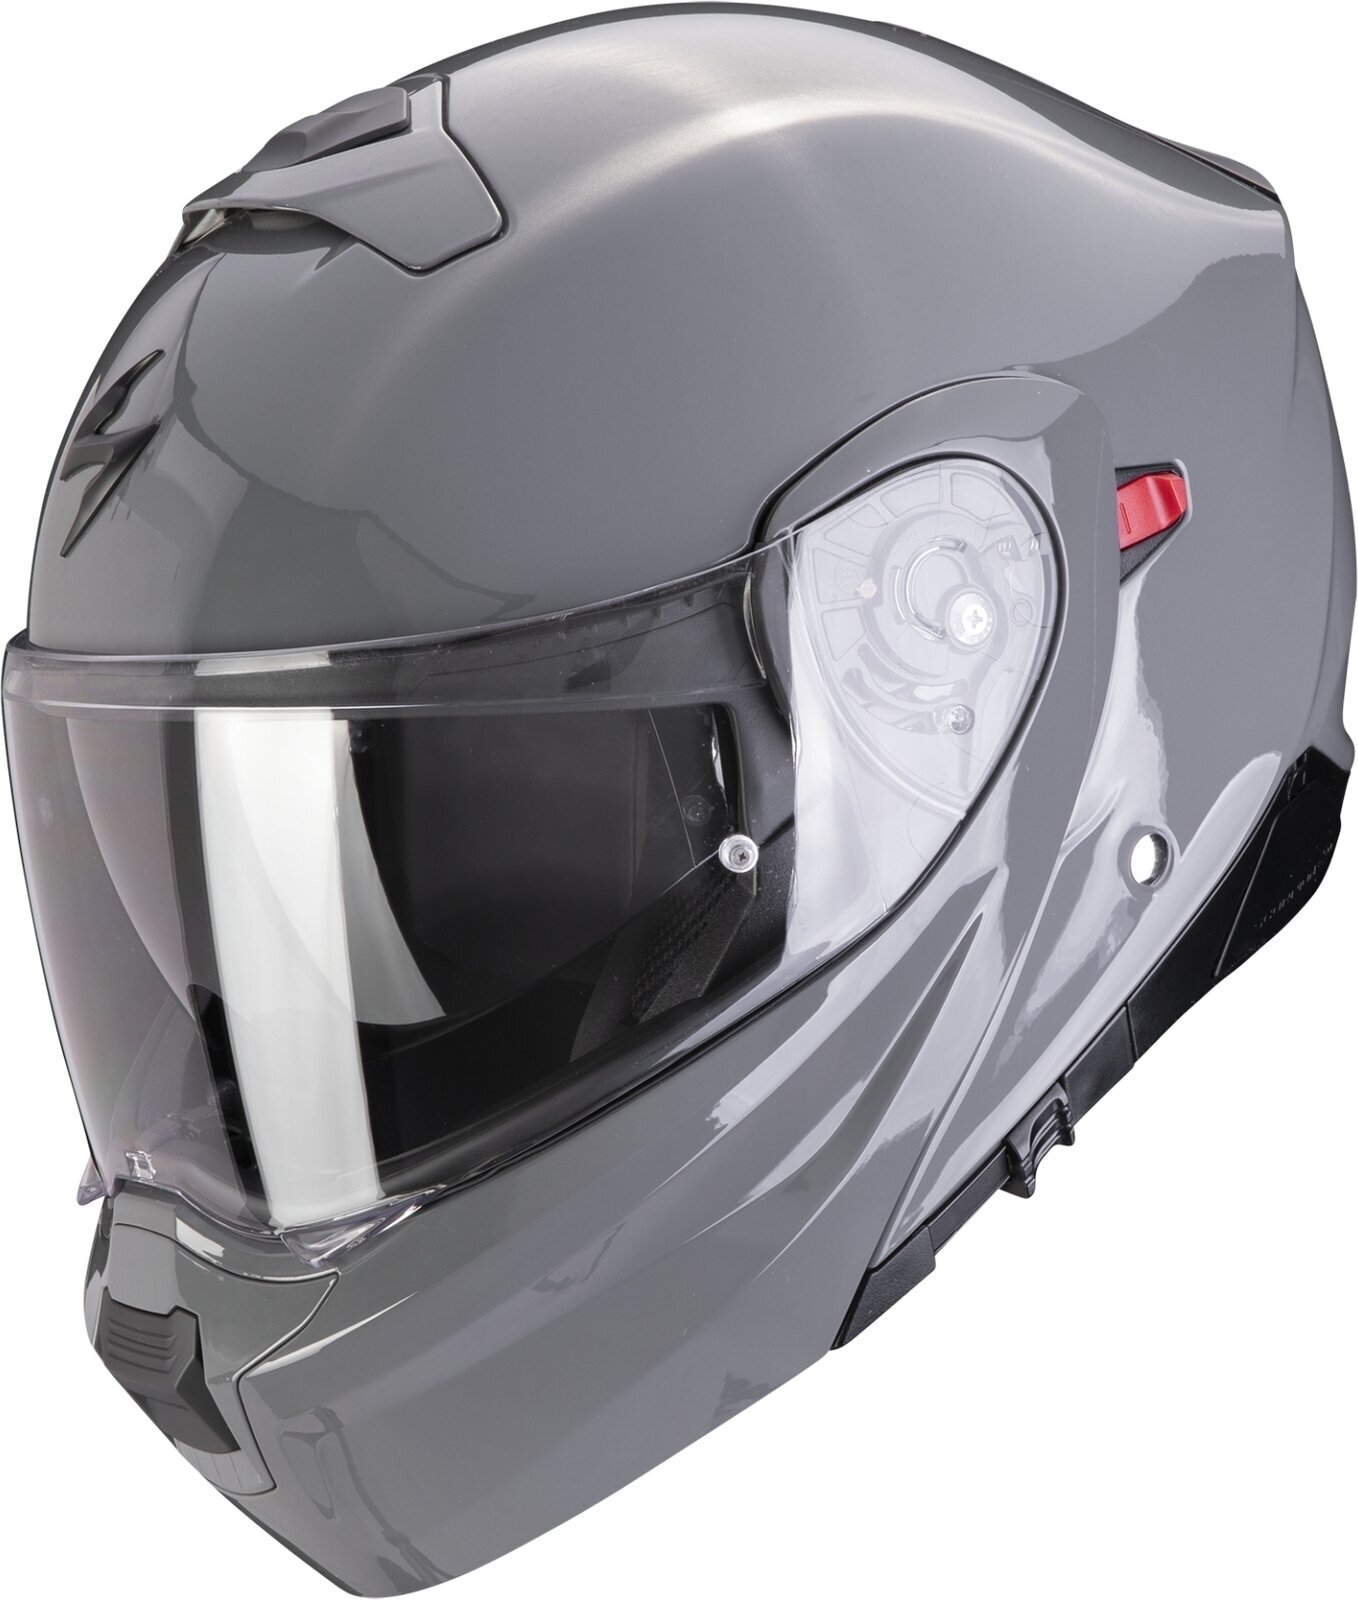 Helmet Scorpion EXO 930 EVO SOLID Cement Grey XL Helmet